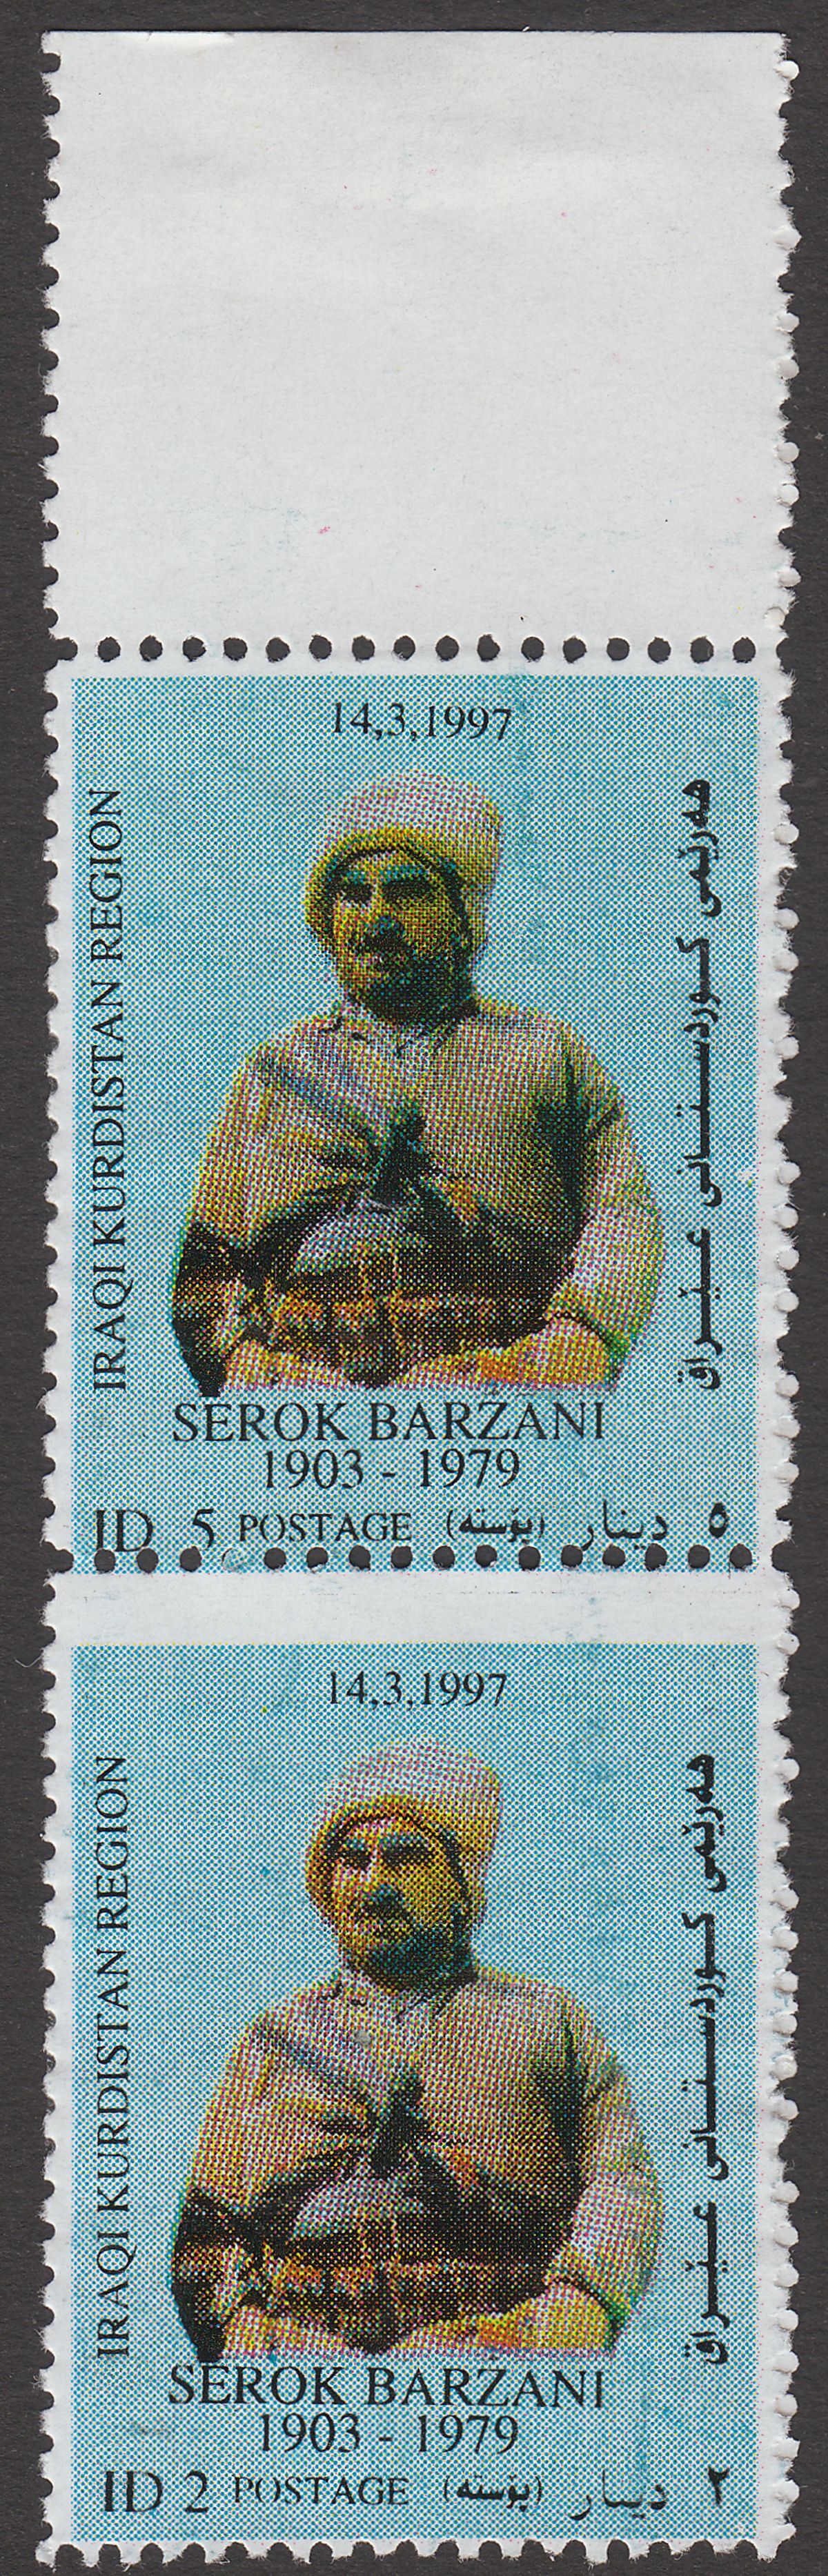 Iraq Kurdistan Region 1993 Serok Barzani 5 ID, 2 ID Se-Tenant Pair Mint